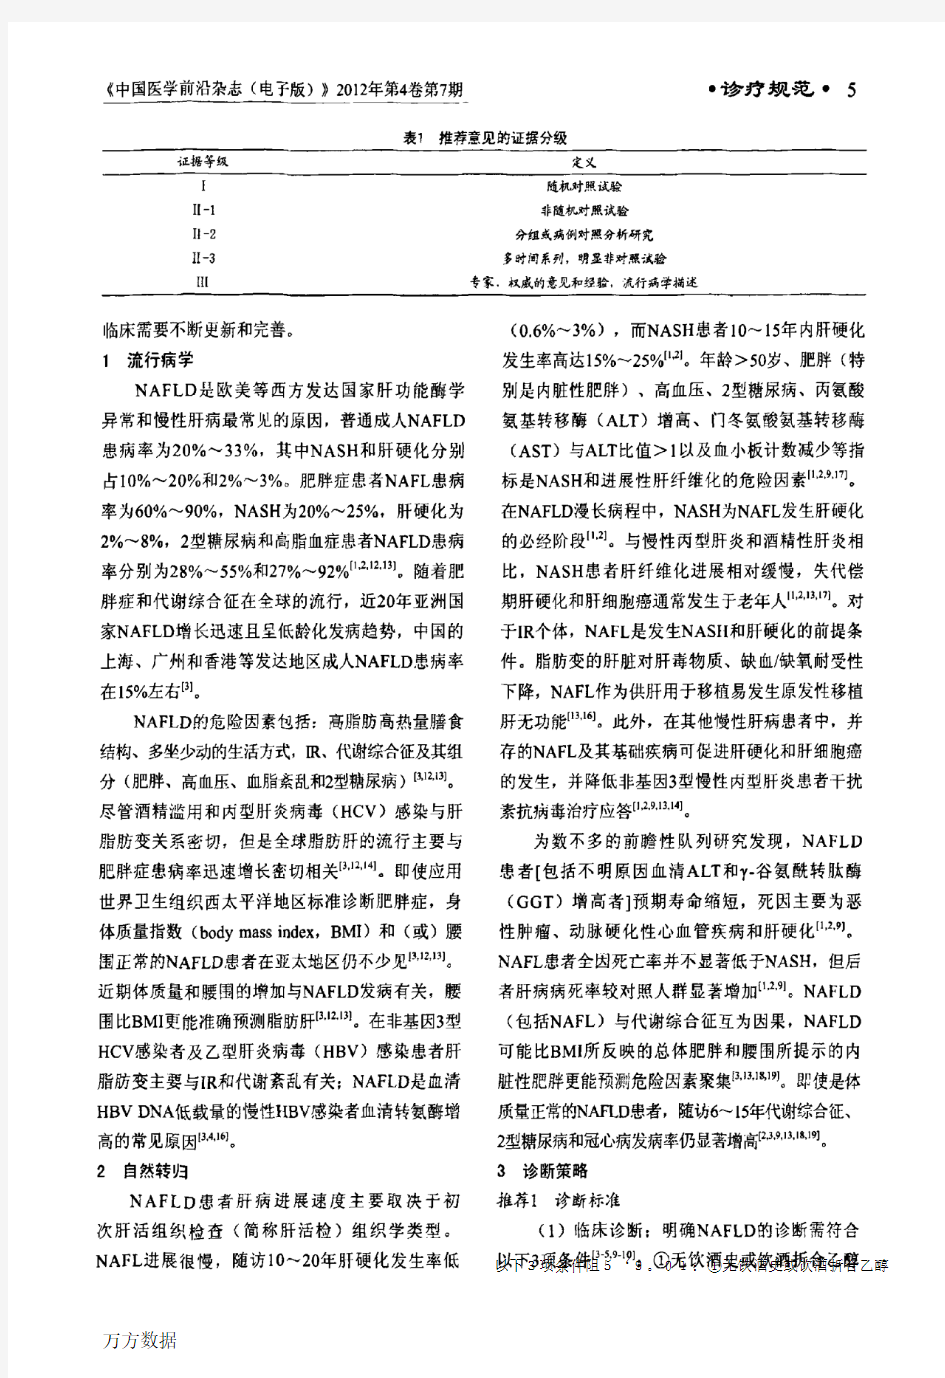 中国非酒精性脂肪性肝病诊疗指南(2010年修订版)